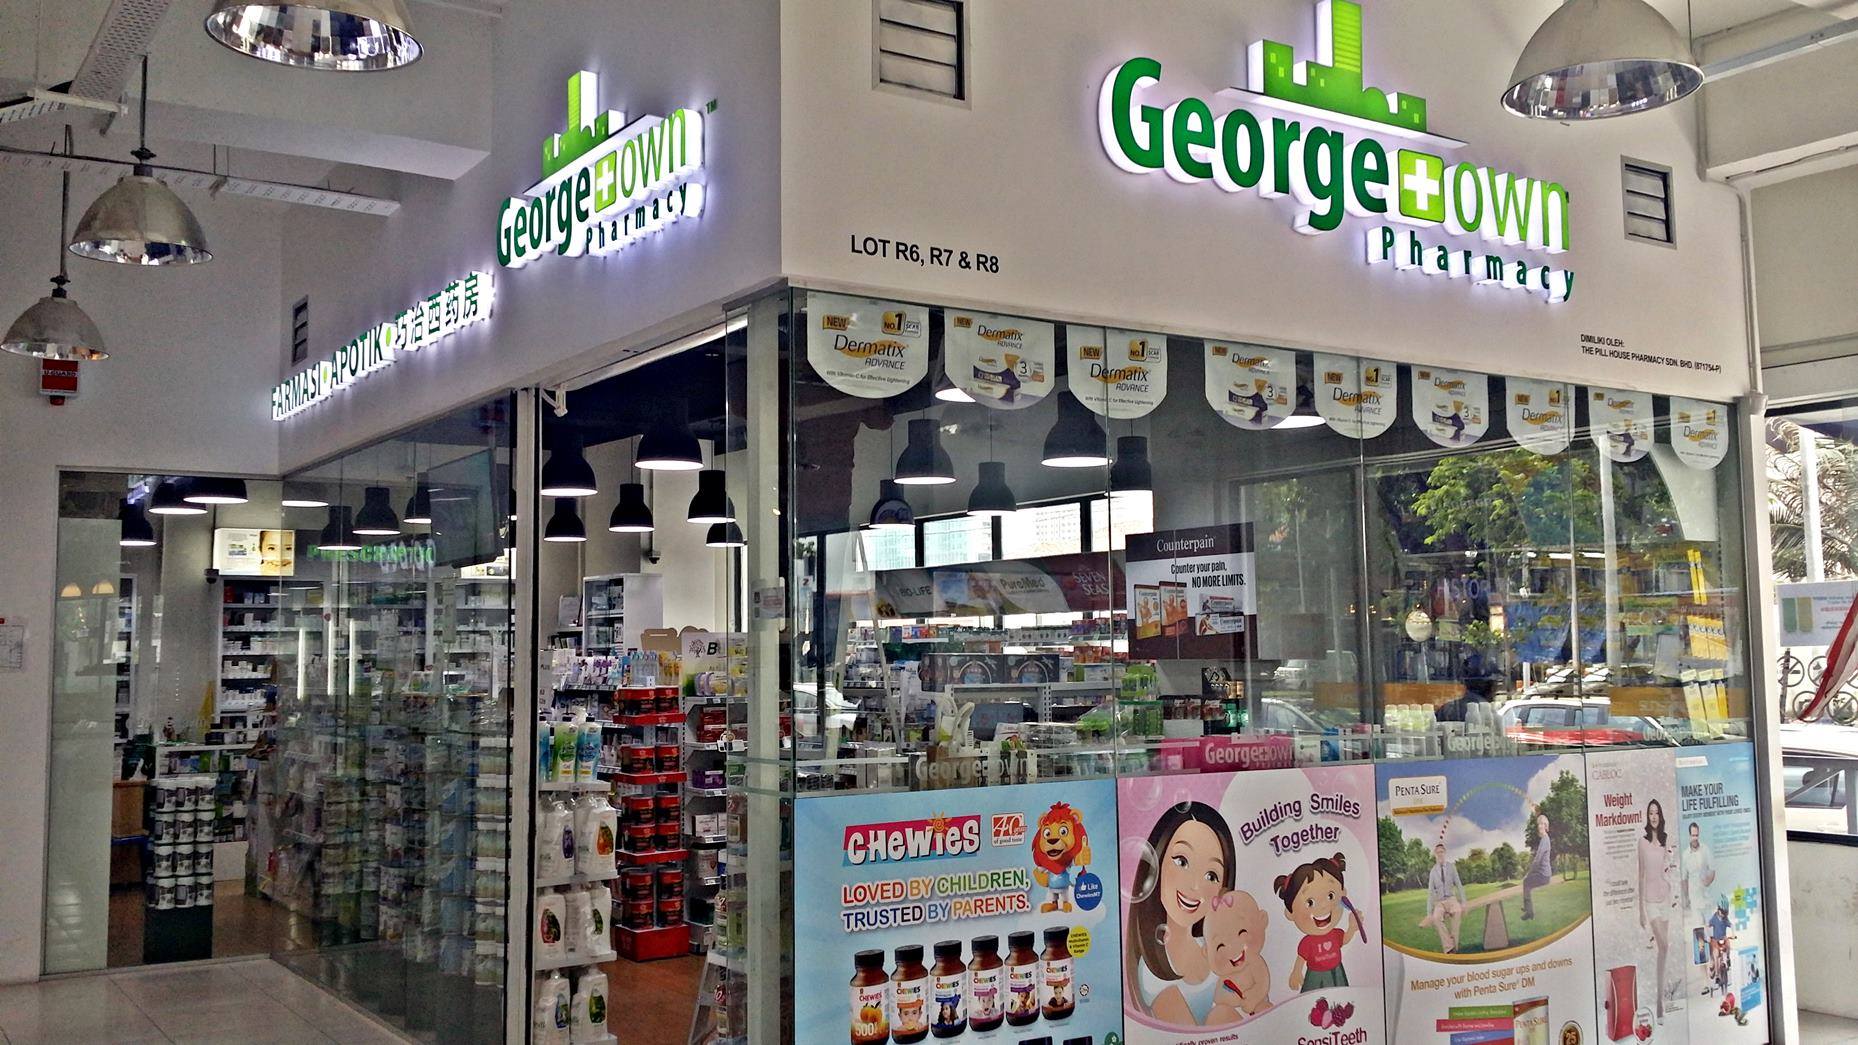 Georgetown pharmacy penang